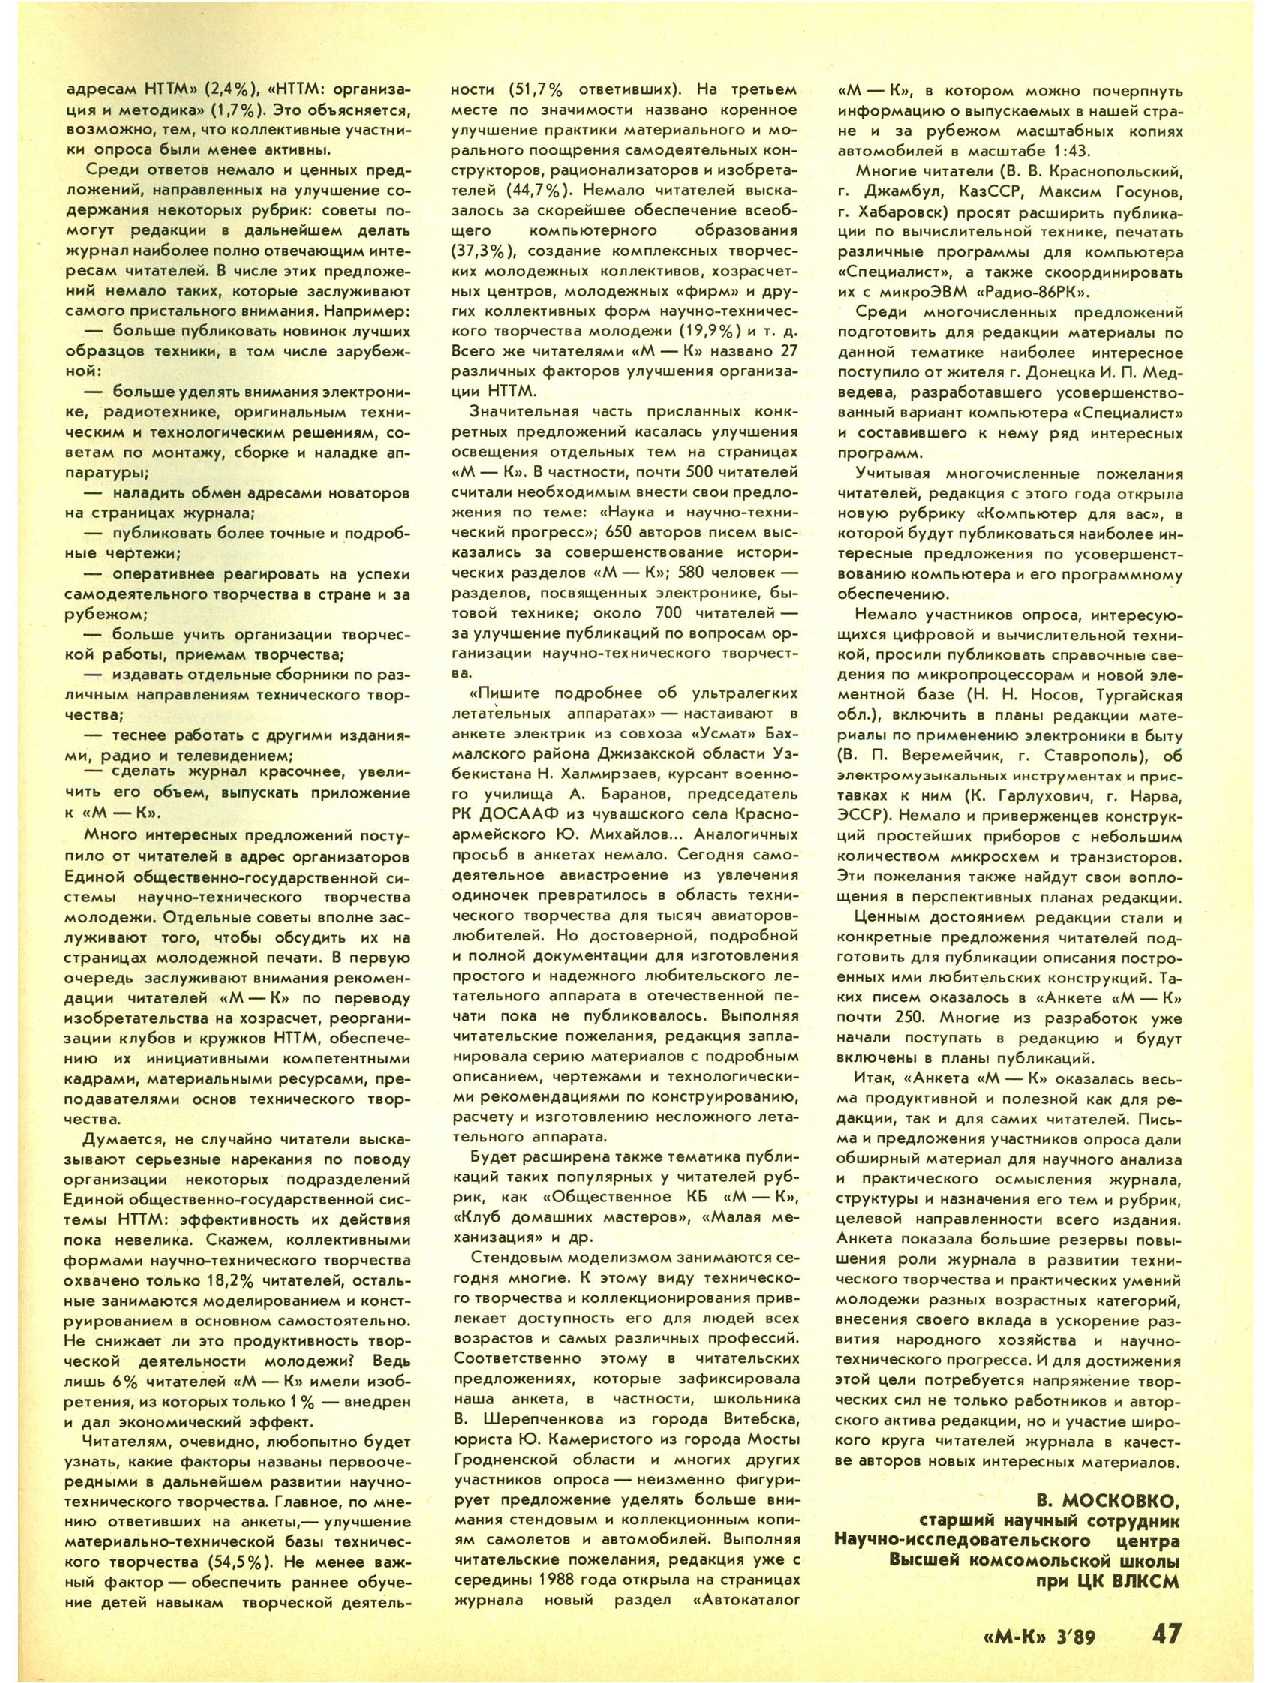 МК 3, 1989, 47 c.